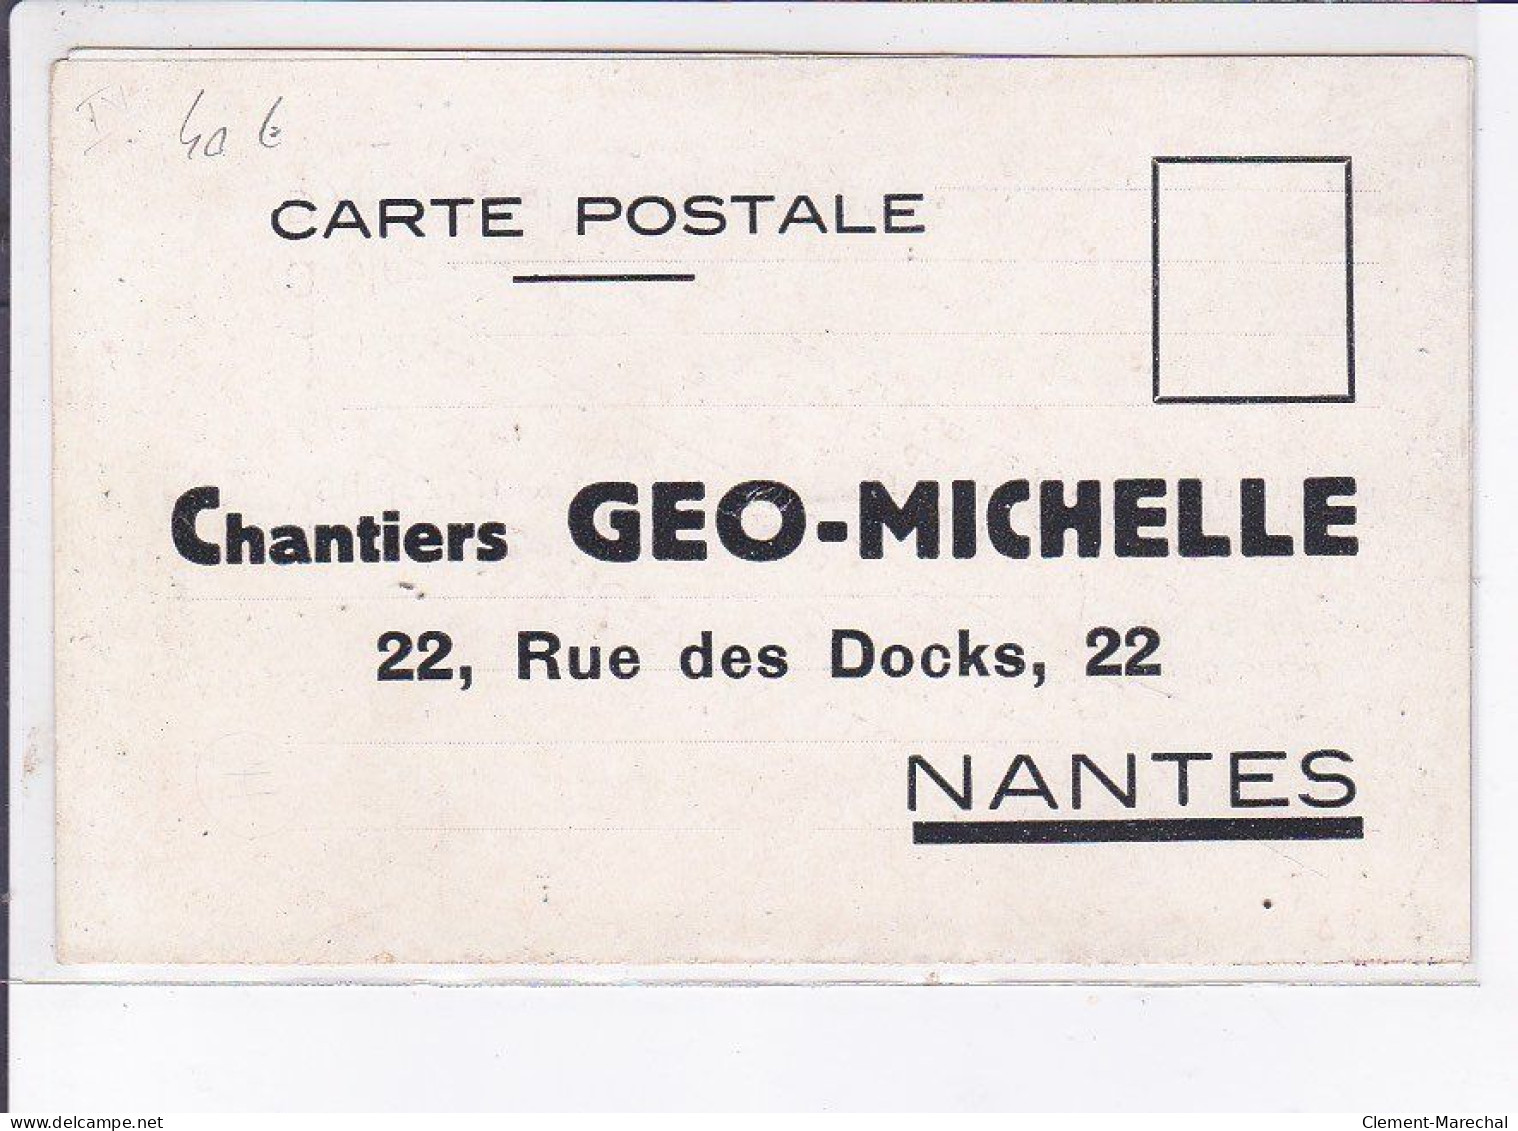 PUBLICITE : L'économie Par La Qualité - Chantiers Géo Michelle à NANTES (illustrée Par Kossuth) - Très Bon état - Advertising